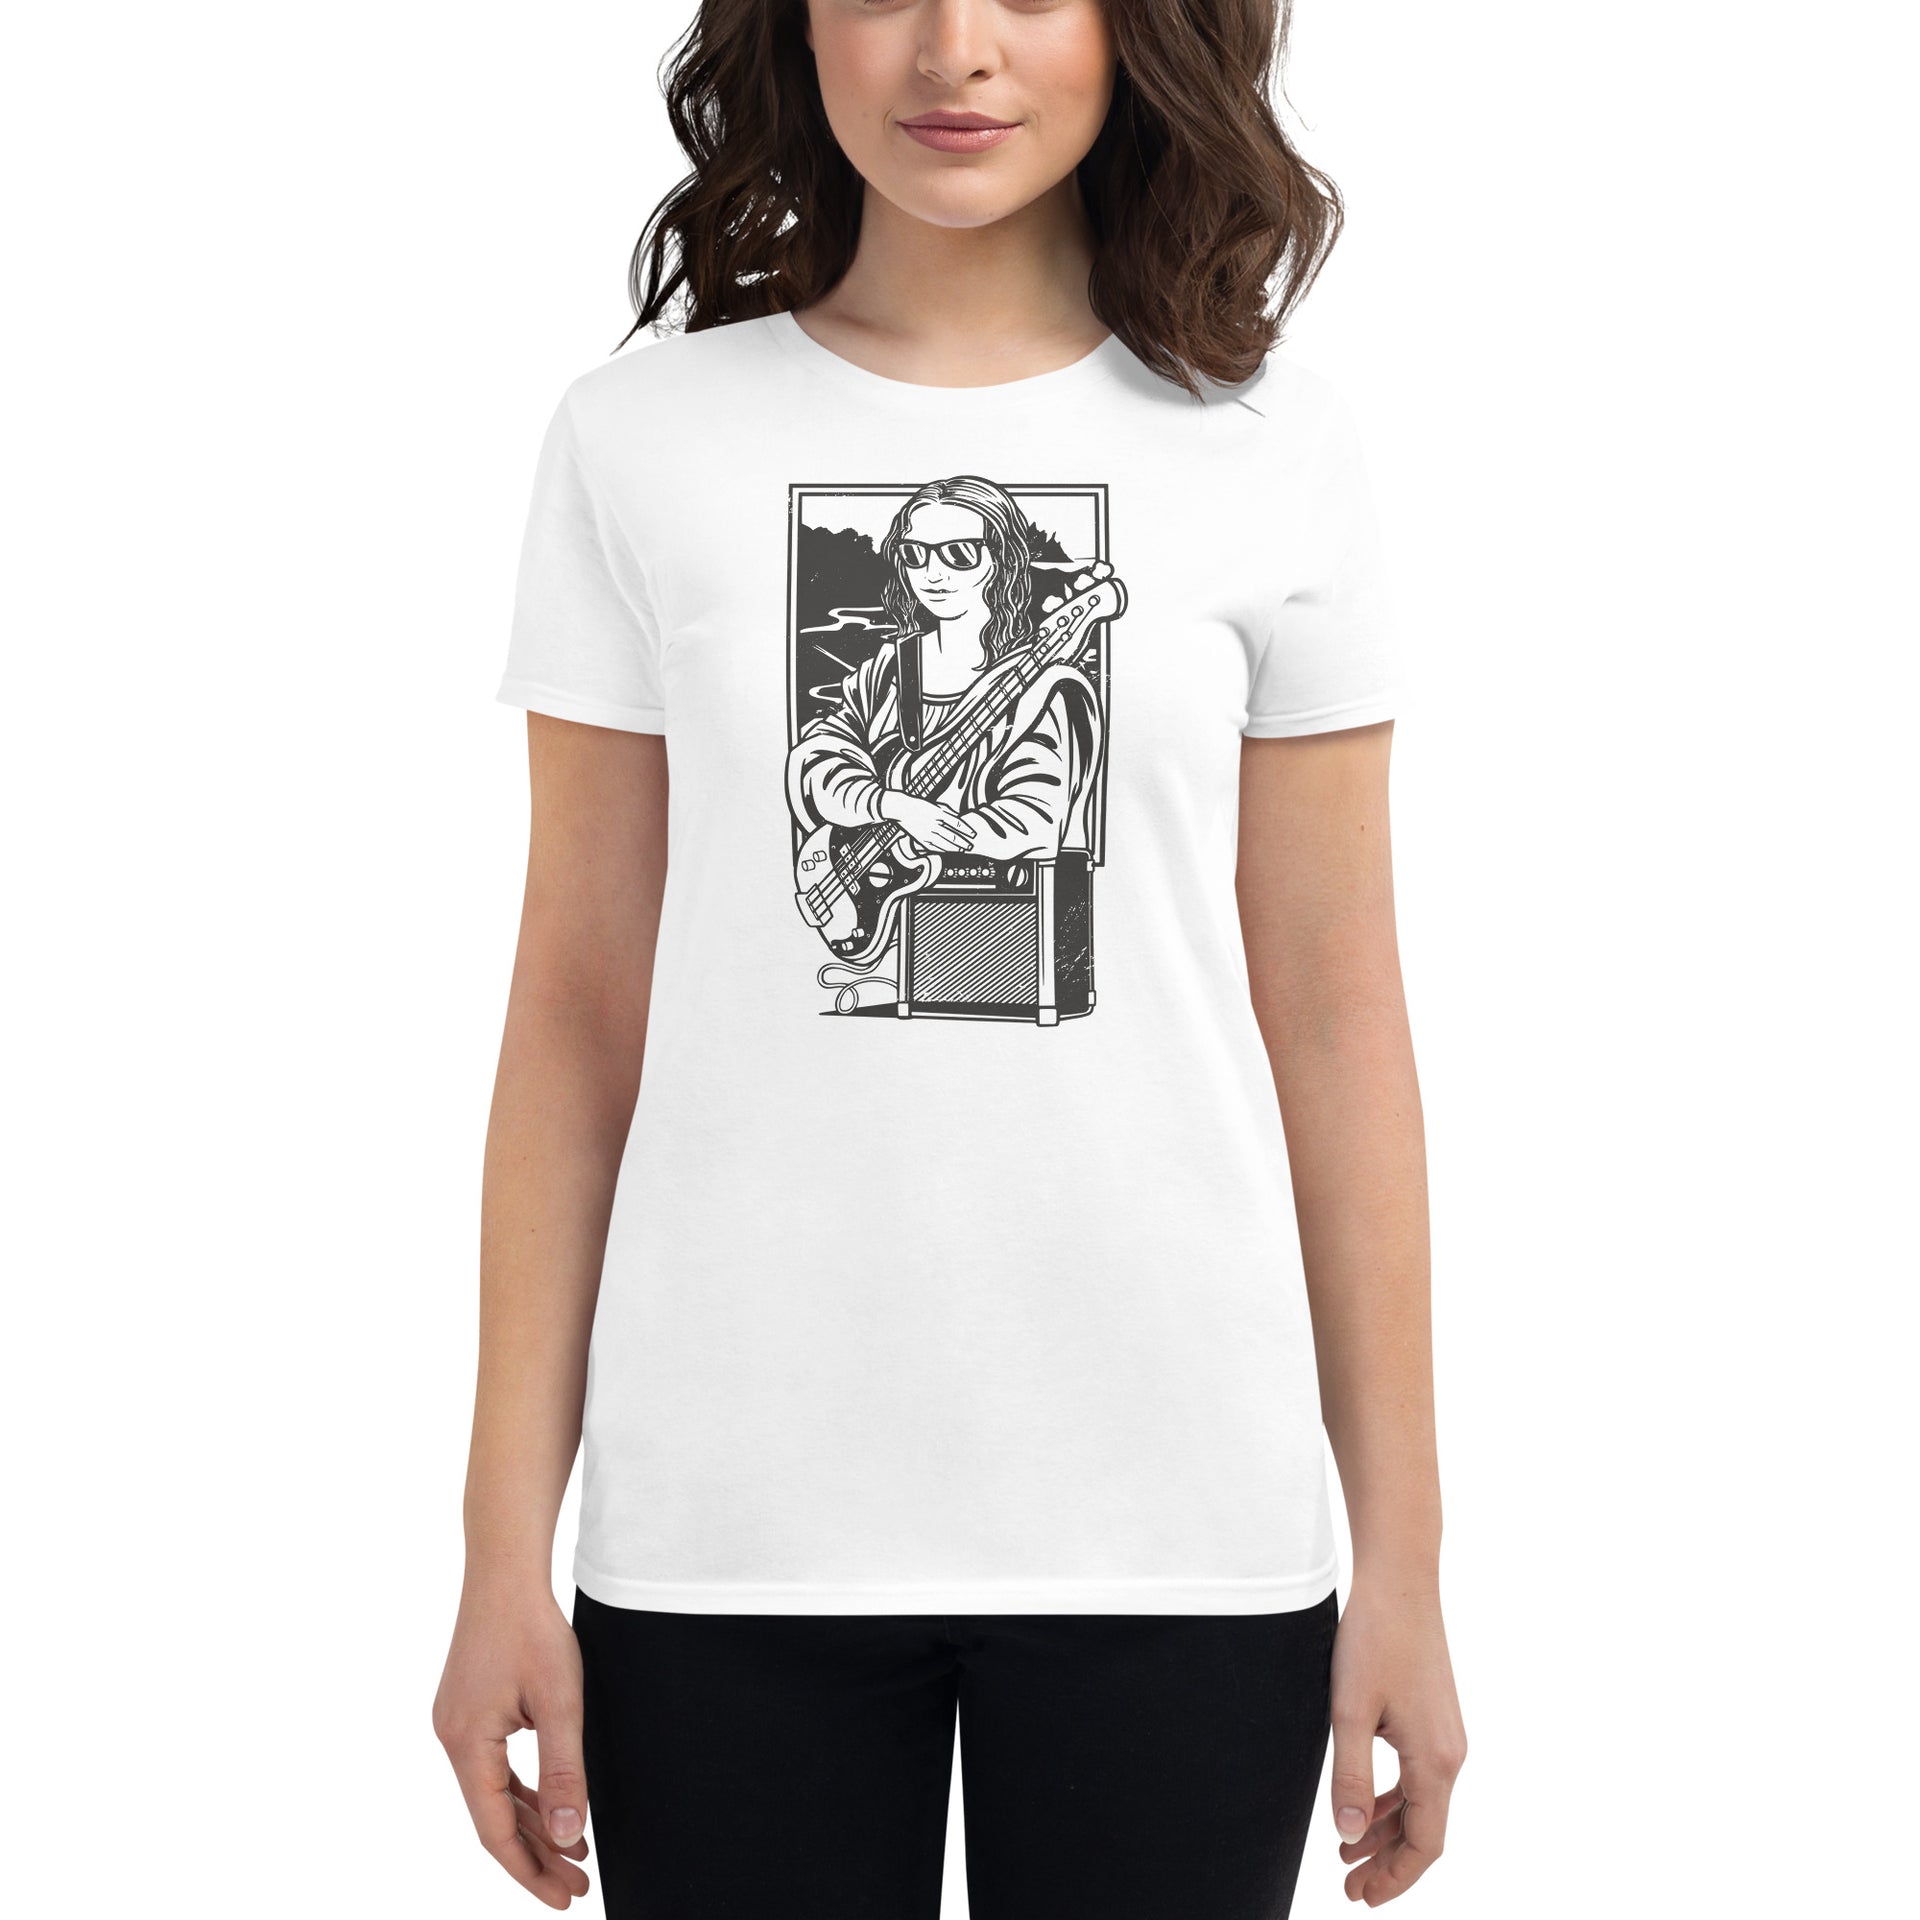 Mona Lisa Electric Guitar Women's T-Shirt